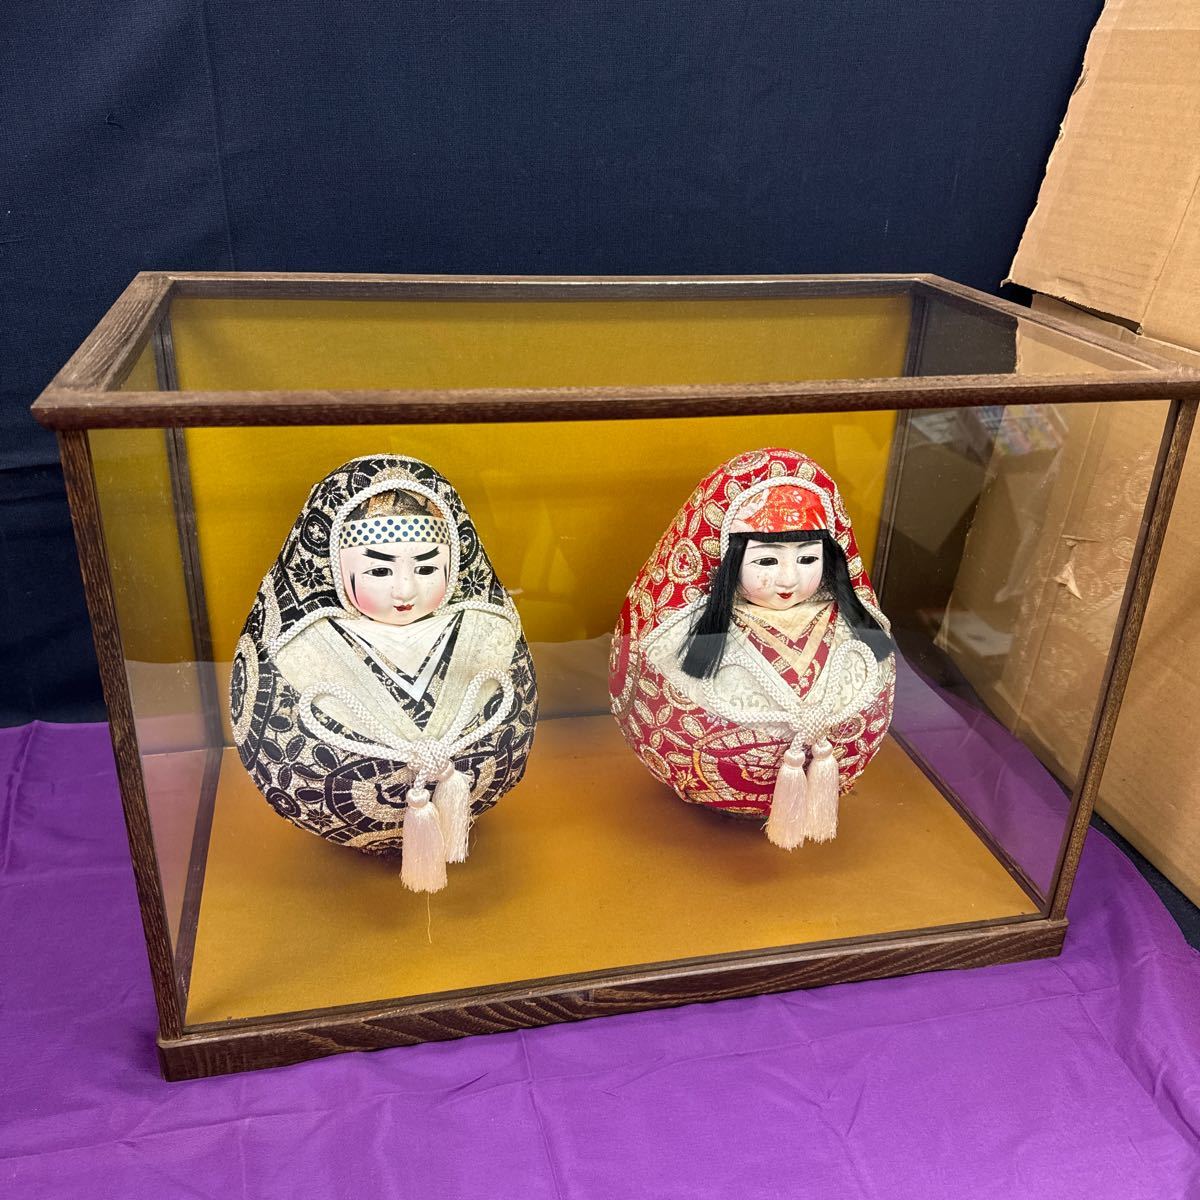 ◆Gebrauchte japanische Puppe Hina Doll Daruma Princess Daruma Collection Glaskasten inklusive Ornament Dekoration Japanischer Stil Interieur Showa Retro 142-36, Puppe, Charakterpuppe, Japanische Puppe, Andere